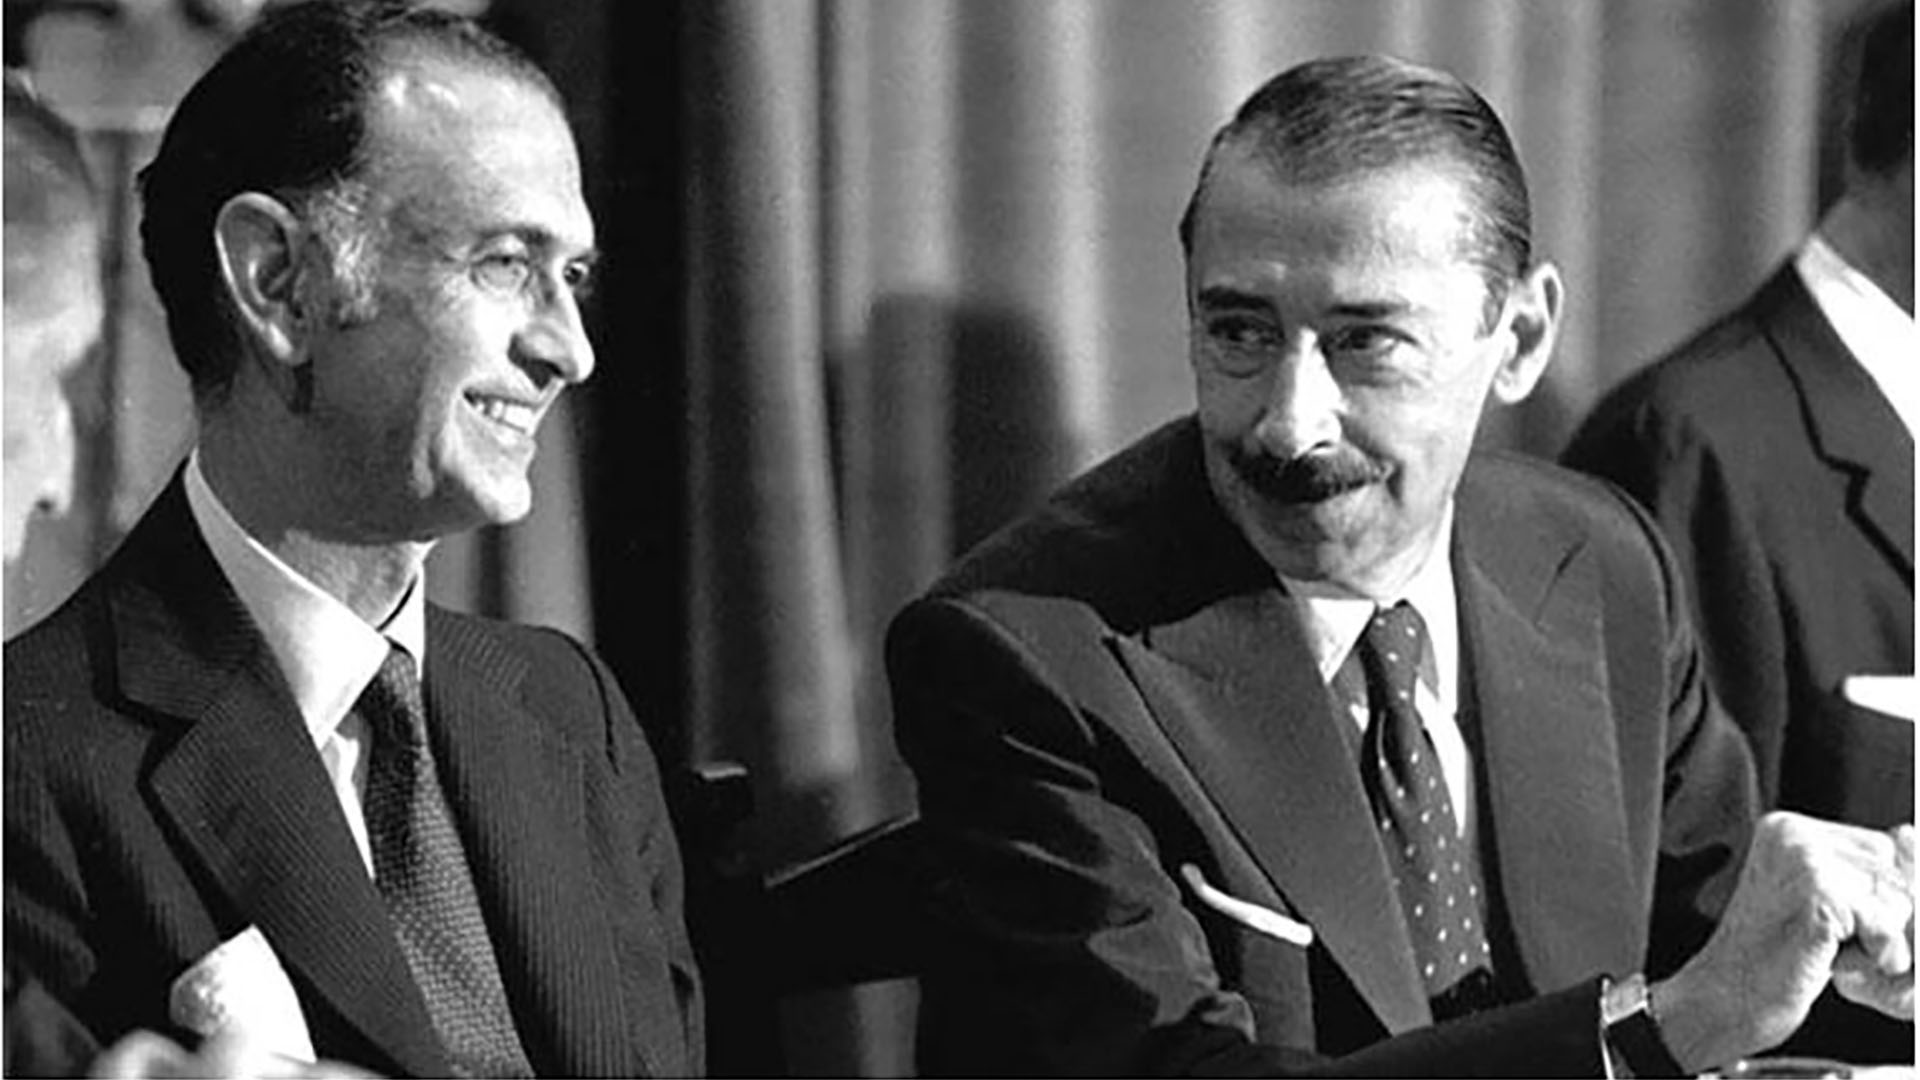 José Alfredo Martínez de Hoz y Jorge Rafael Videla, tándem clave de los primeros cinco años de la dictadura militar 1976-1983